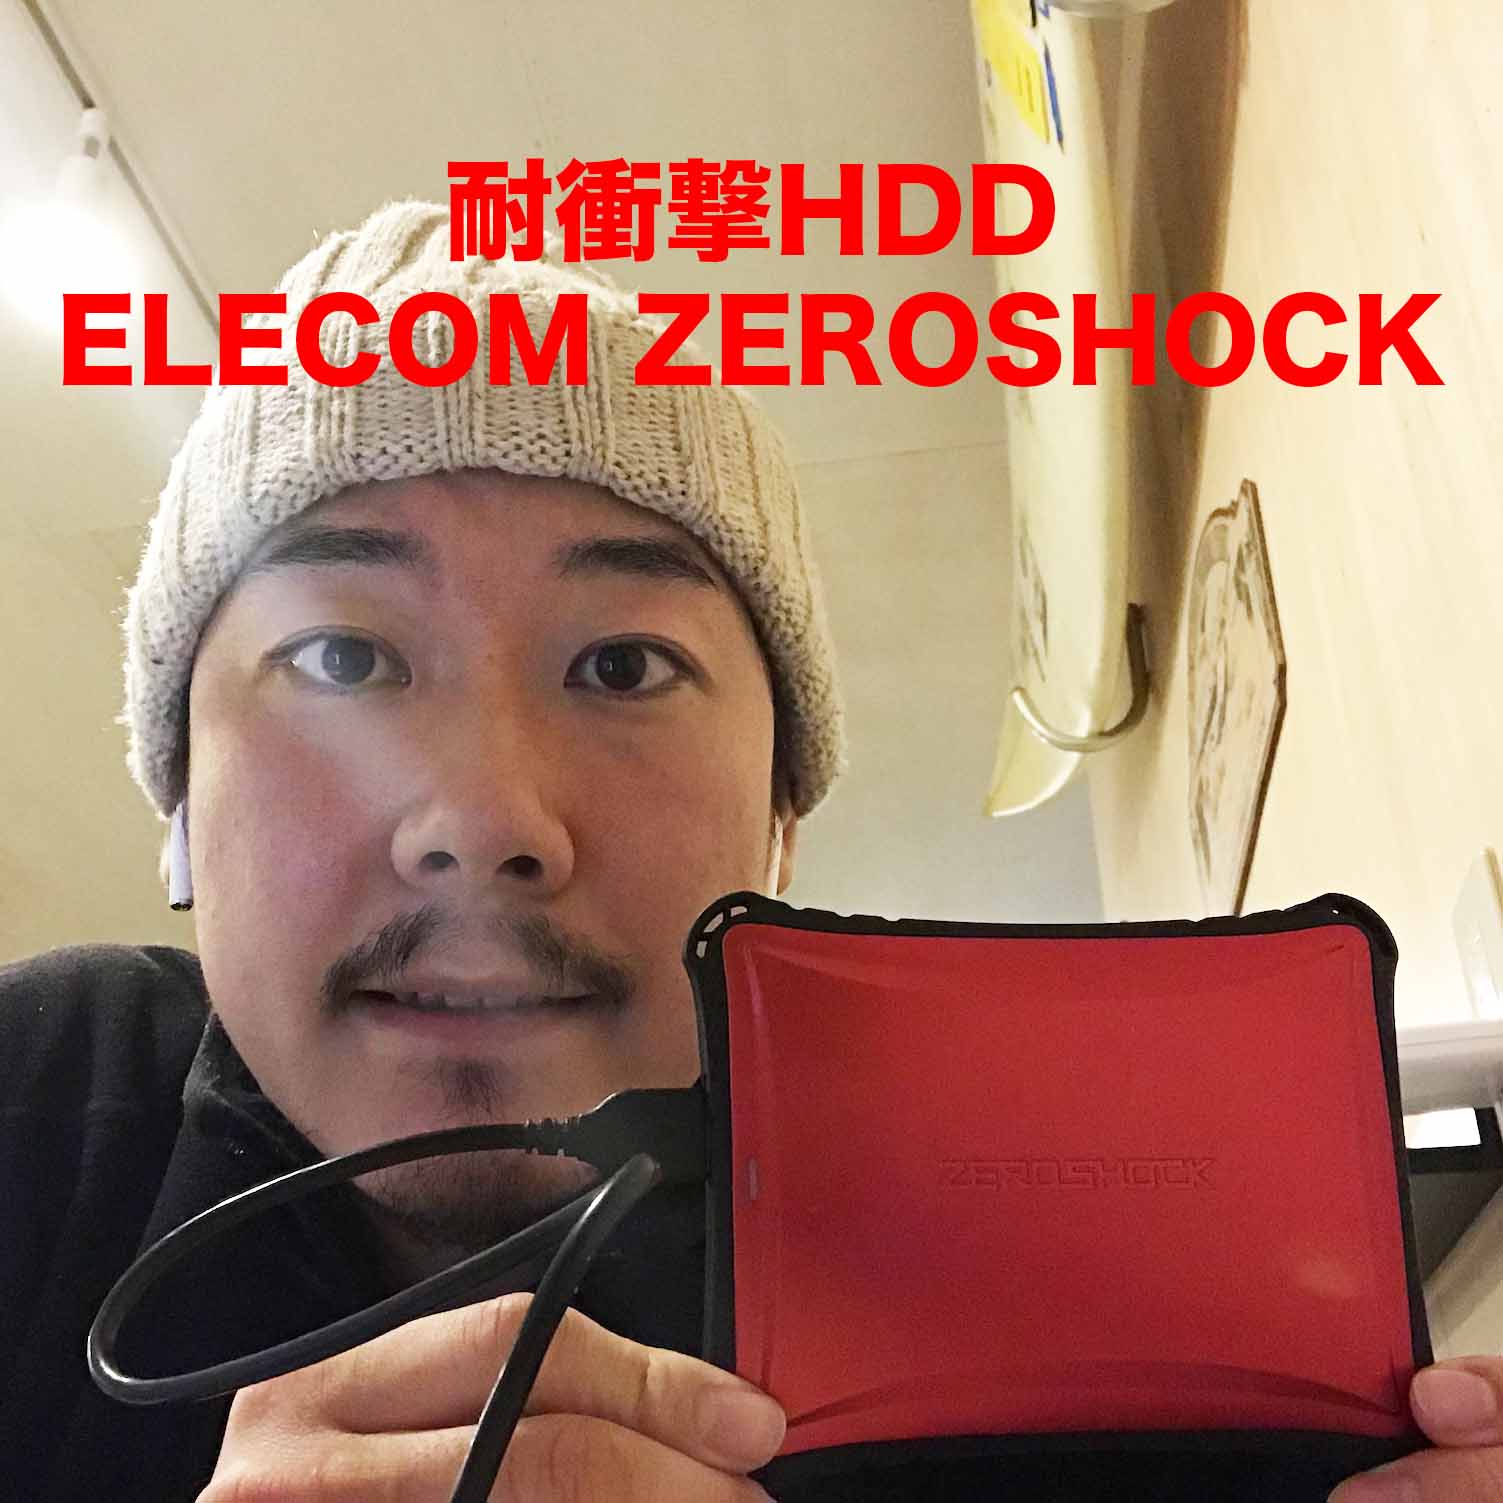 ELECOM 耐衝撃ポータブルHDD ZEROSHOCK ELP-ZSUご紹介